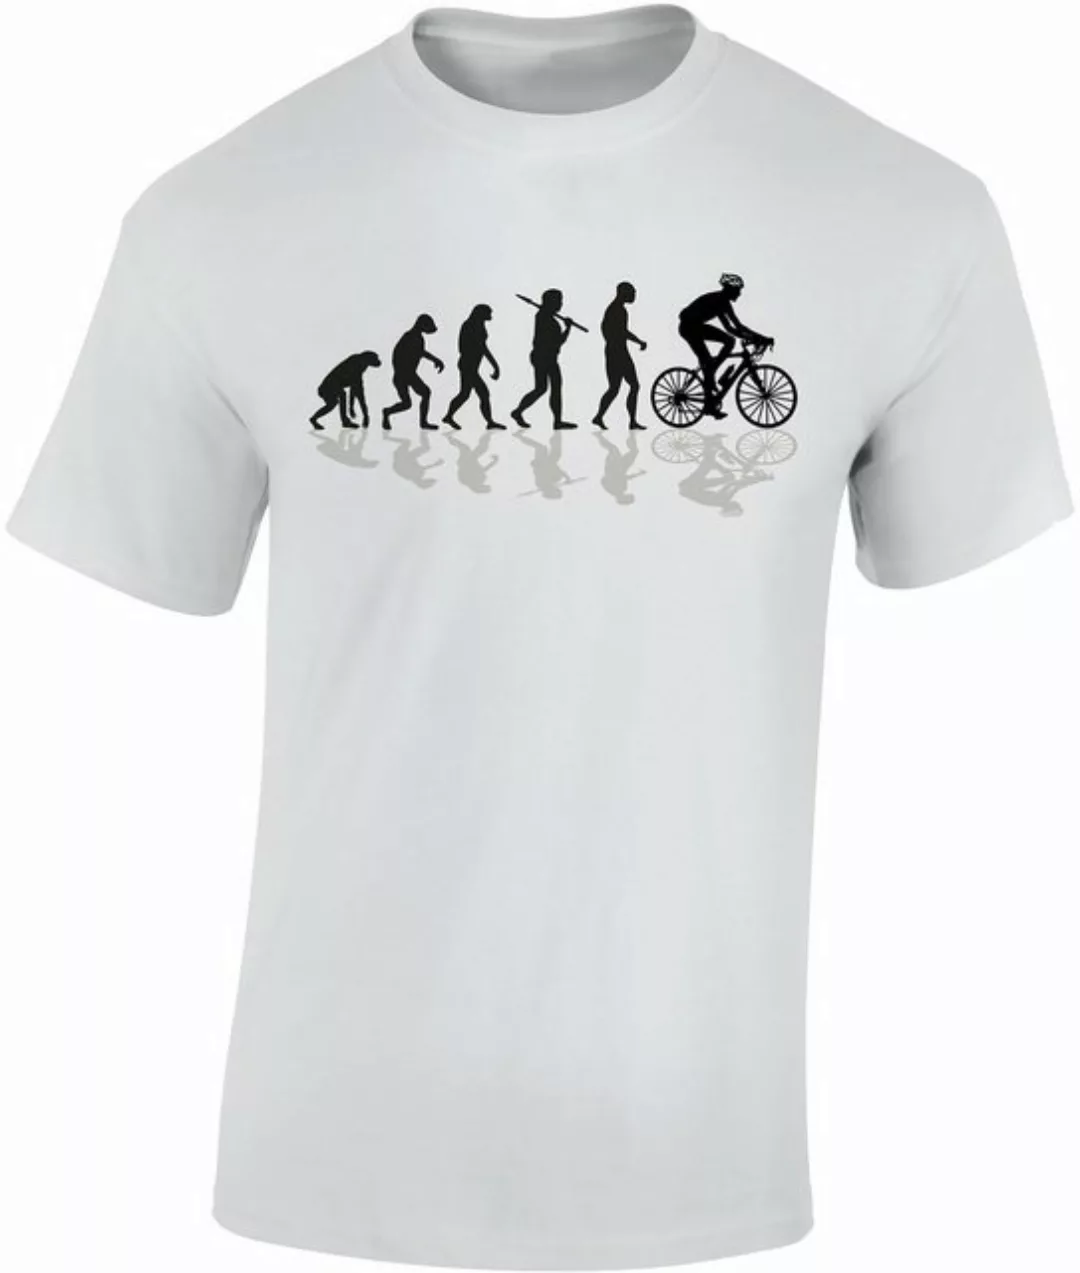 Baddery Print-Shirt Fahrrad T-Shirt: "Bike Evolution" hochwertiger Siebdruc günstig online kaufen